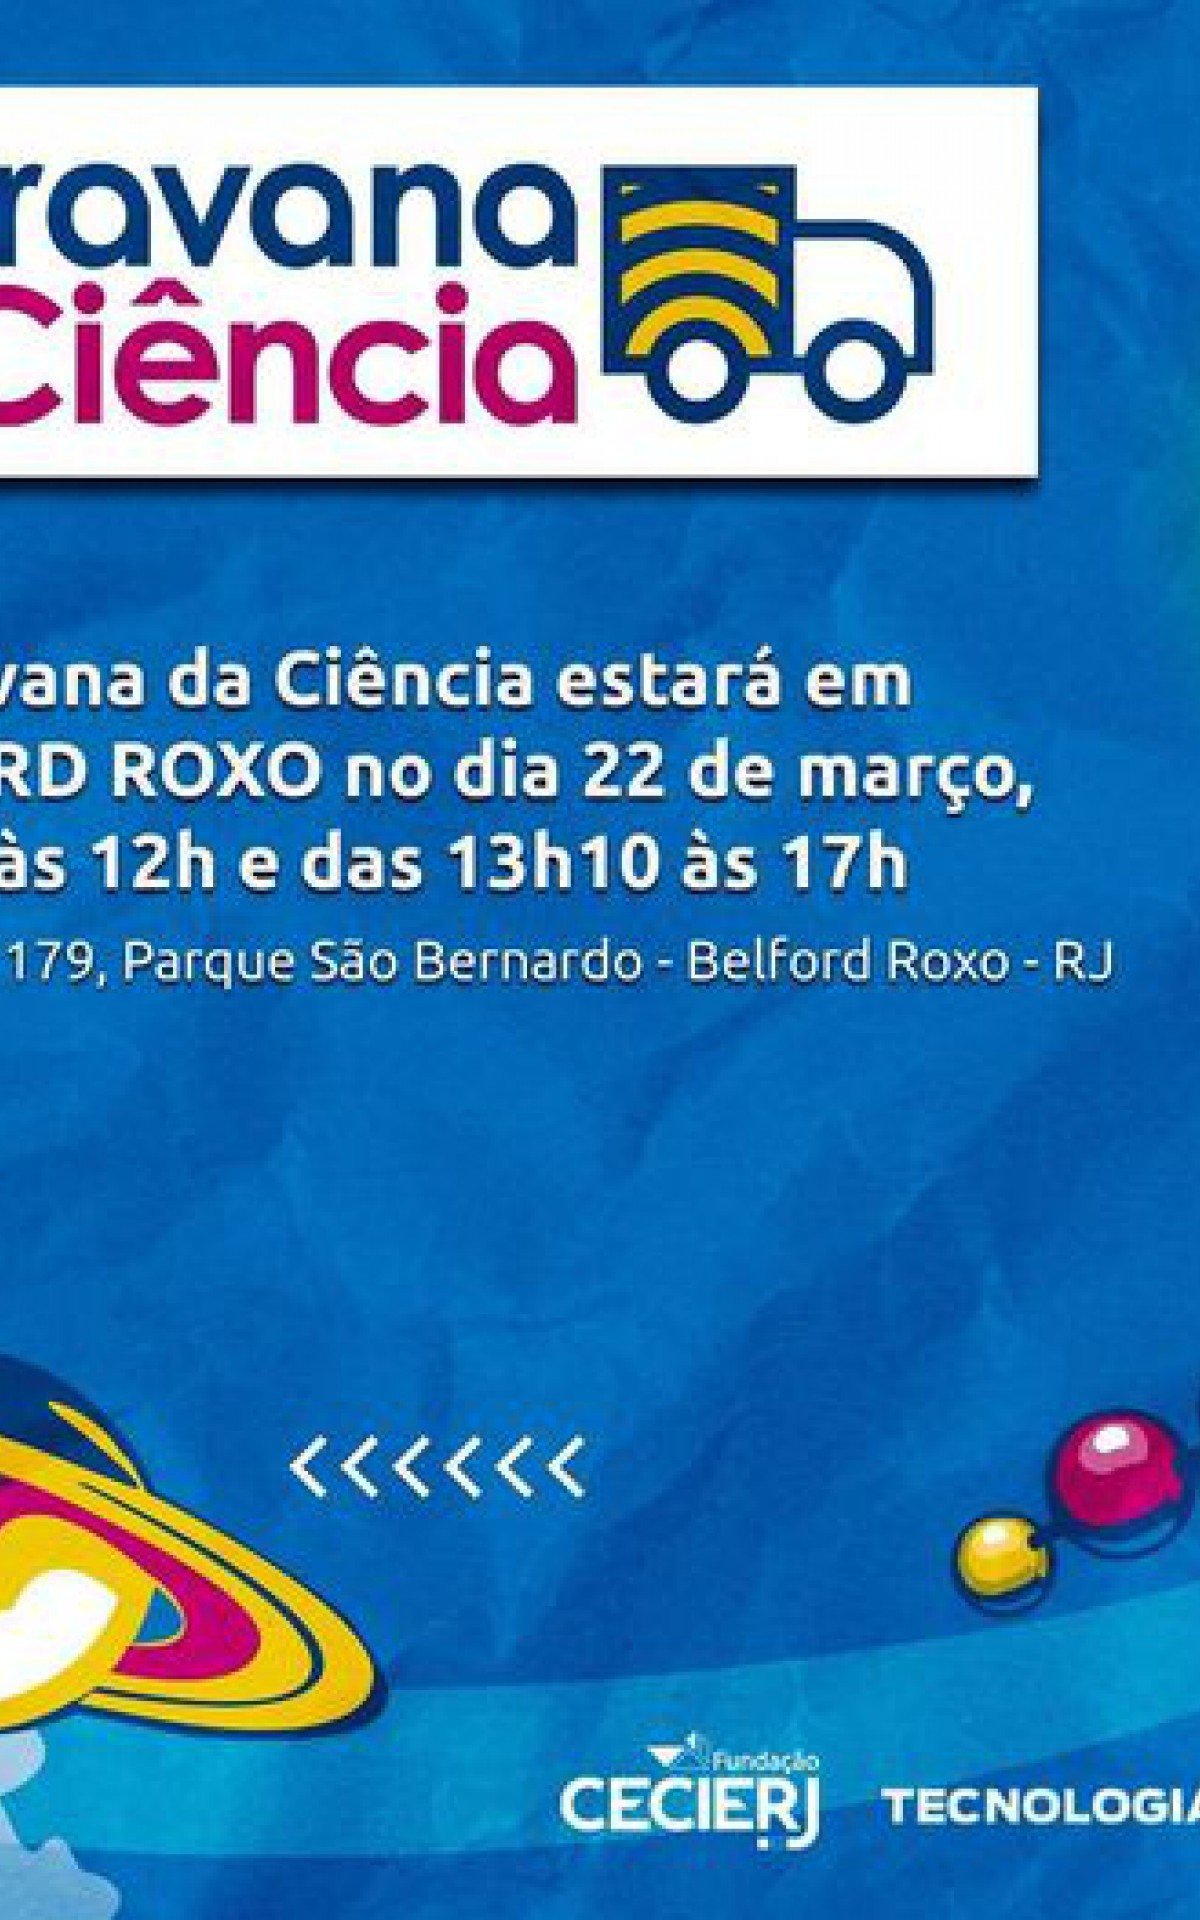 La Caravana de la Ciencia se detendrá cerca de Polo Cecierj / Cederj, en la Rua Mauá, en el Parque São Bernardo, en Belford Roxo, de 9h a 12h y de 13h10 a 17h.